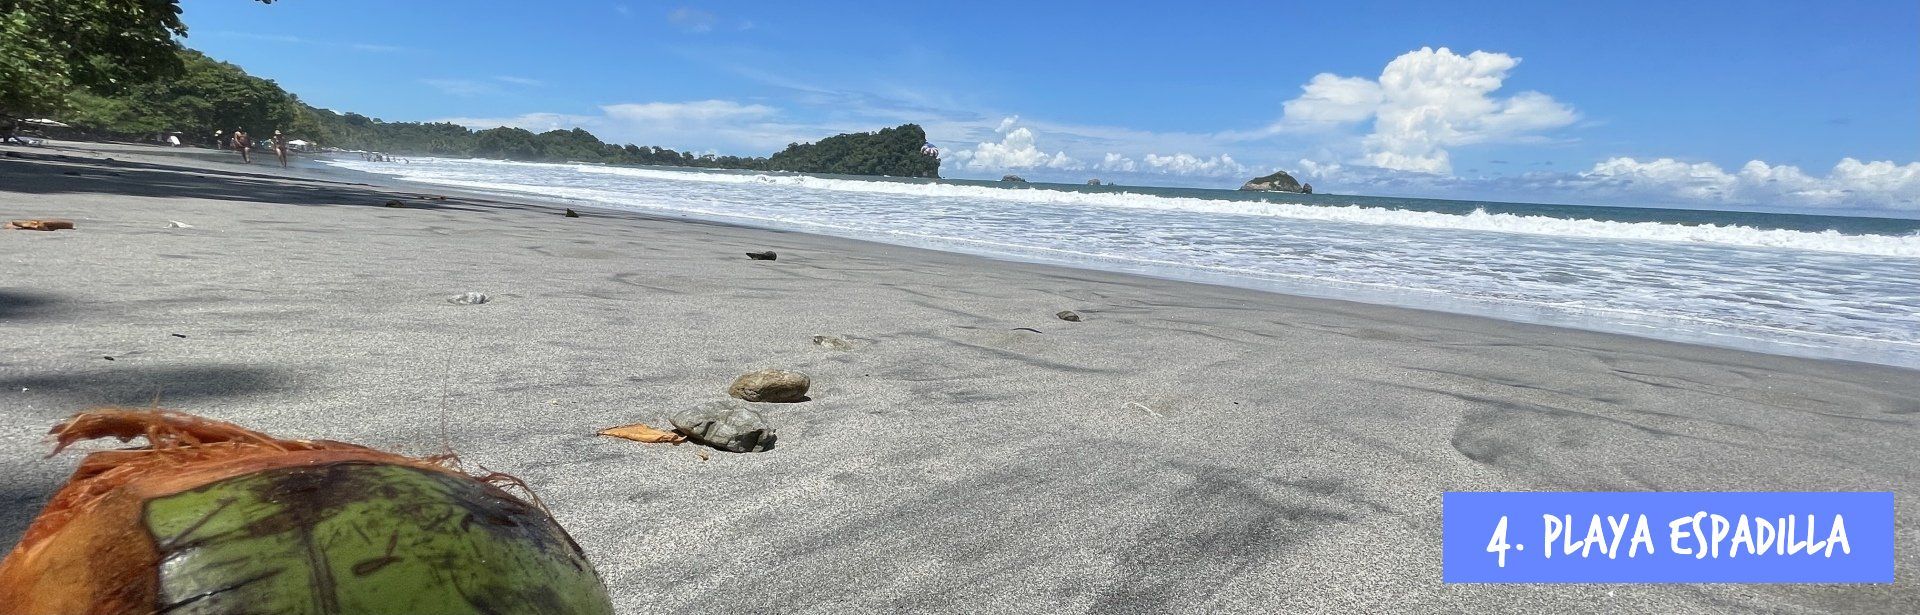 Playa Espadilla Manuel Antonio Costa Rica